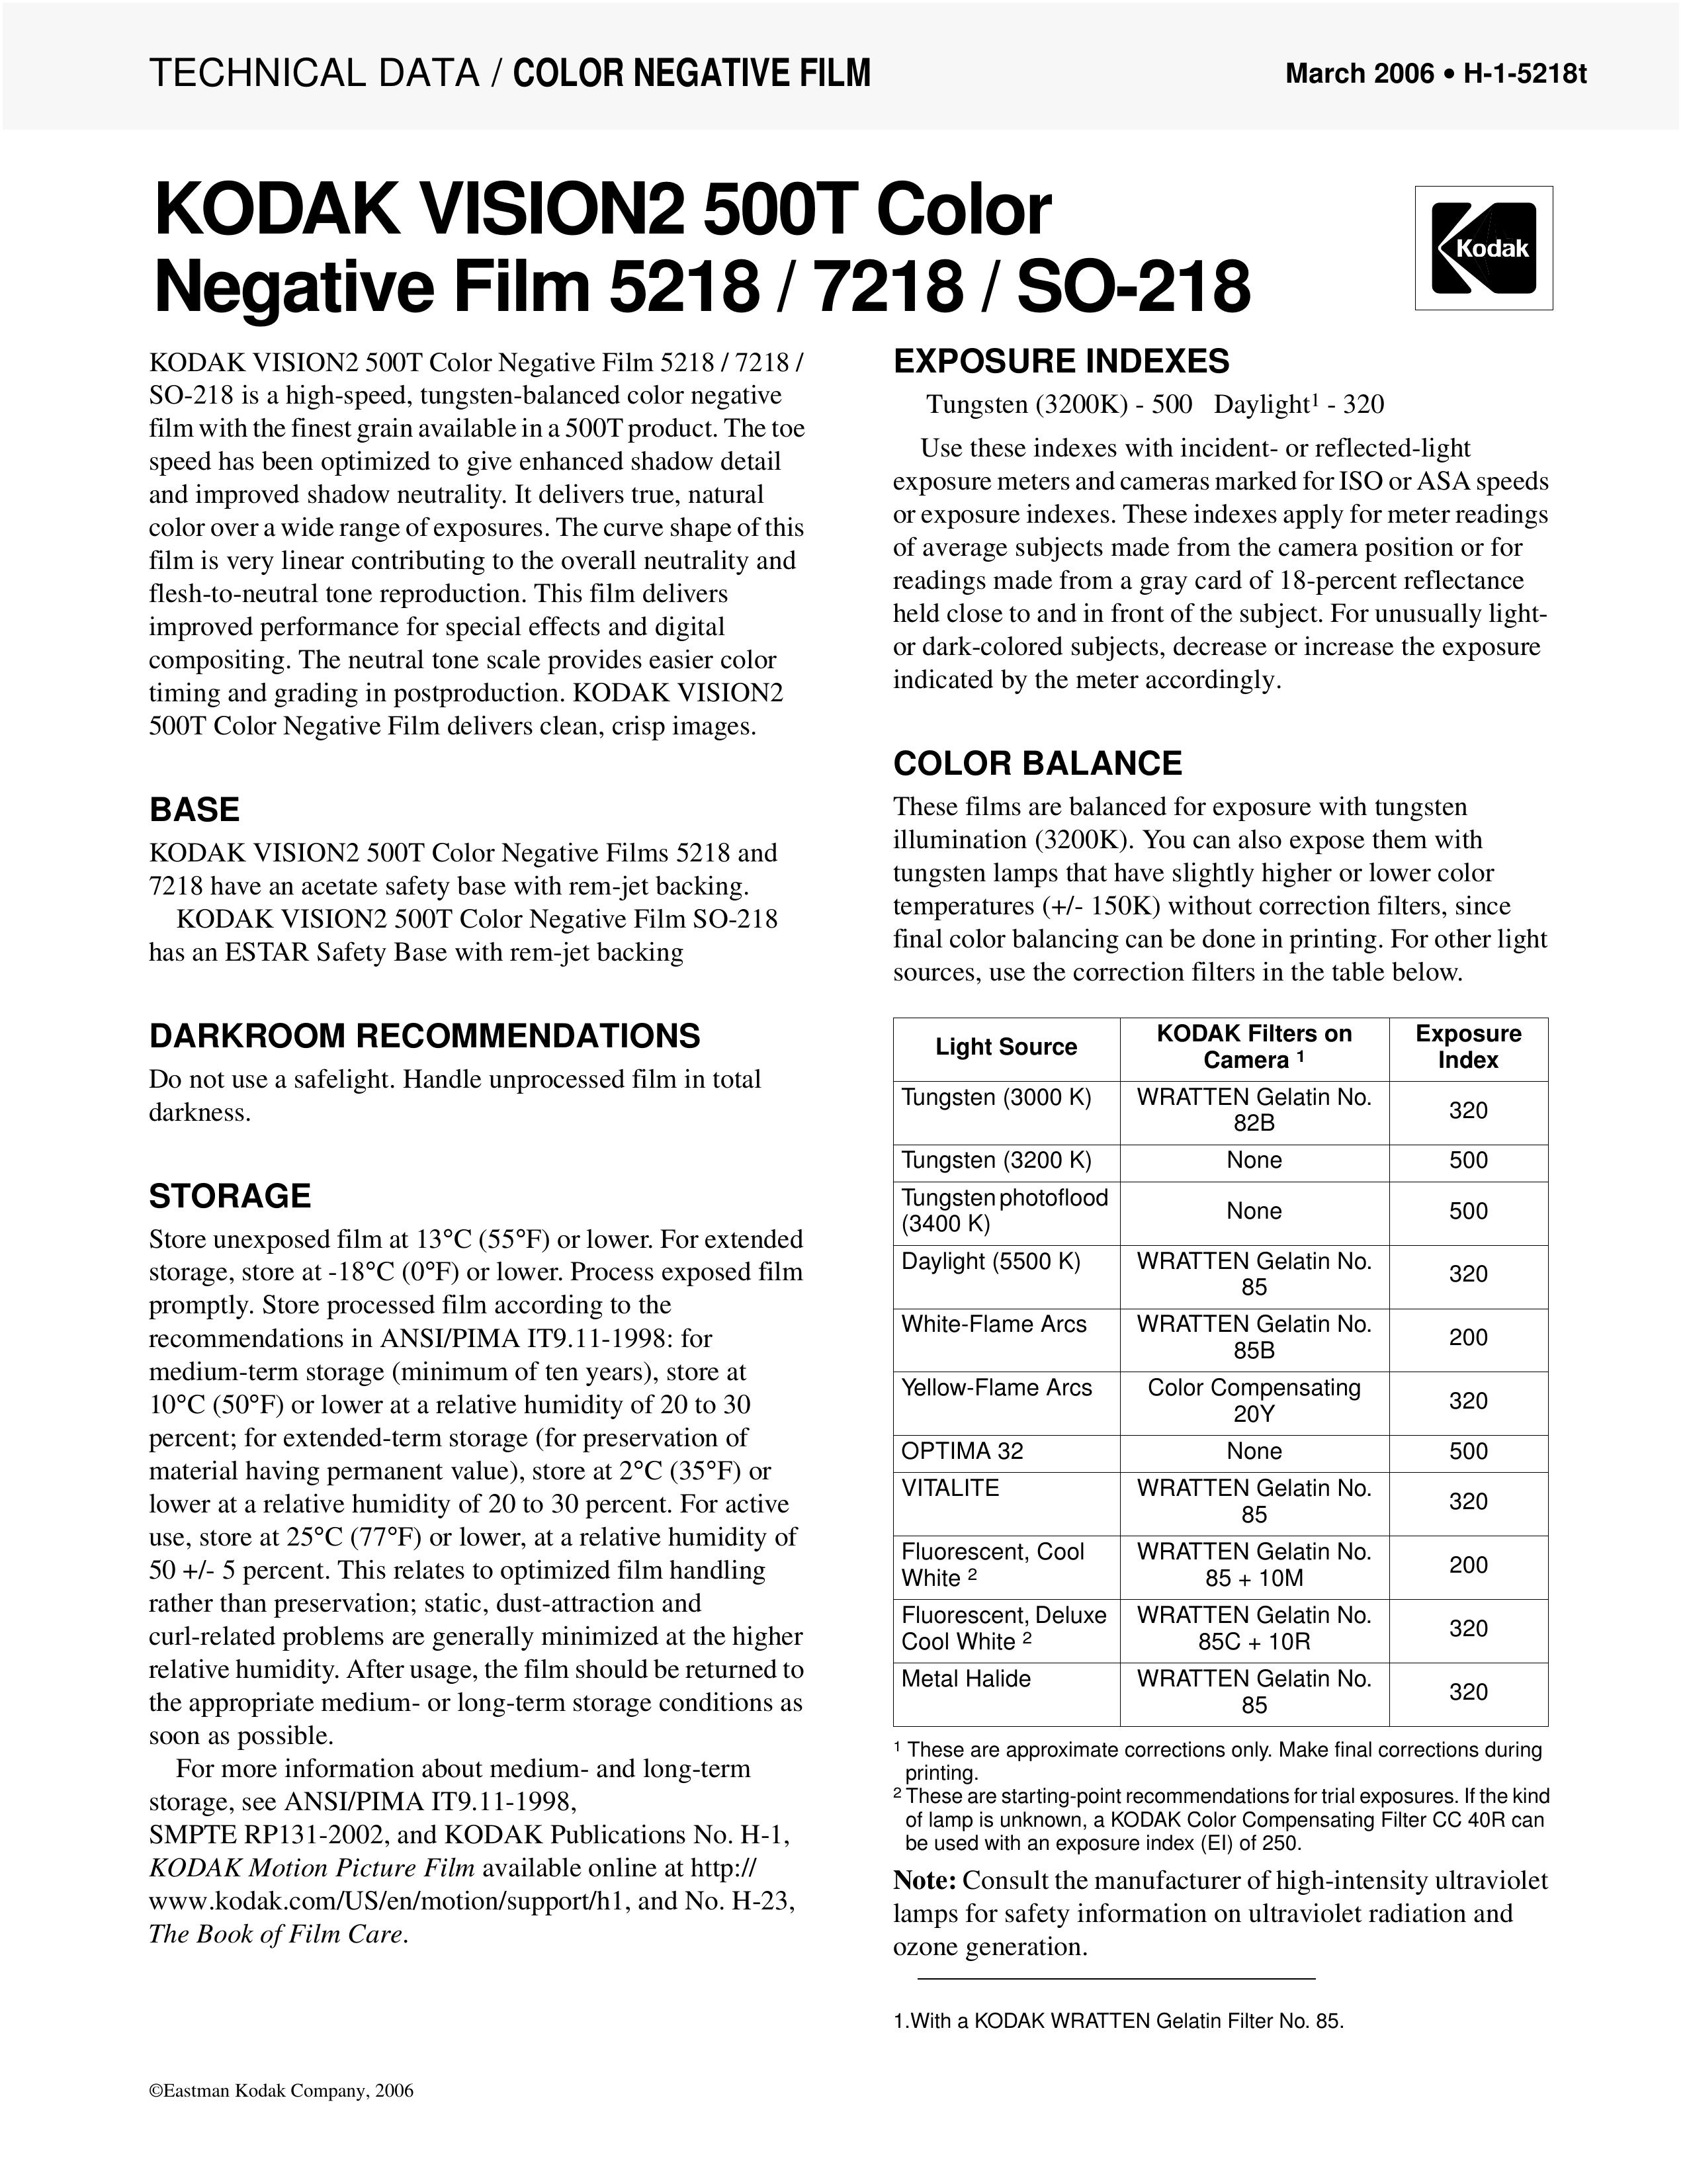 Kodak 5218 Film Camera User Manual